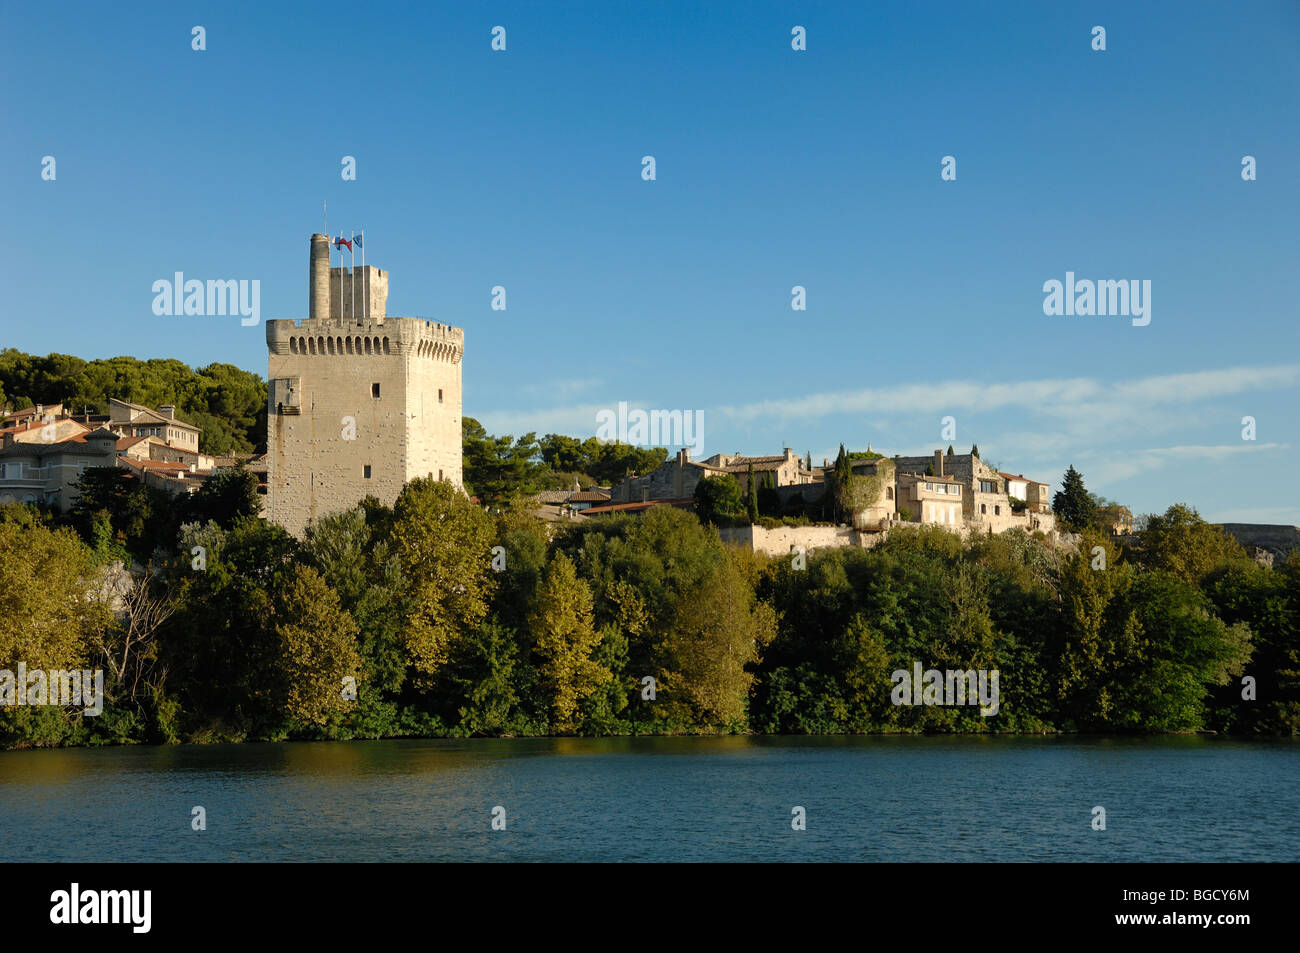 Tour Philippe le Bel, Medieval Tower on Banks of the River Rhône, Villeneuve-les-Avignon, Gard, Languedoc-Roussillon, France Stock Photo